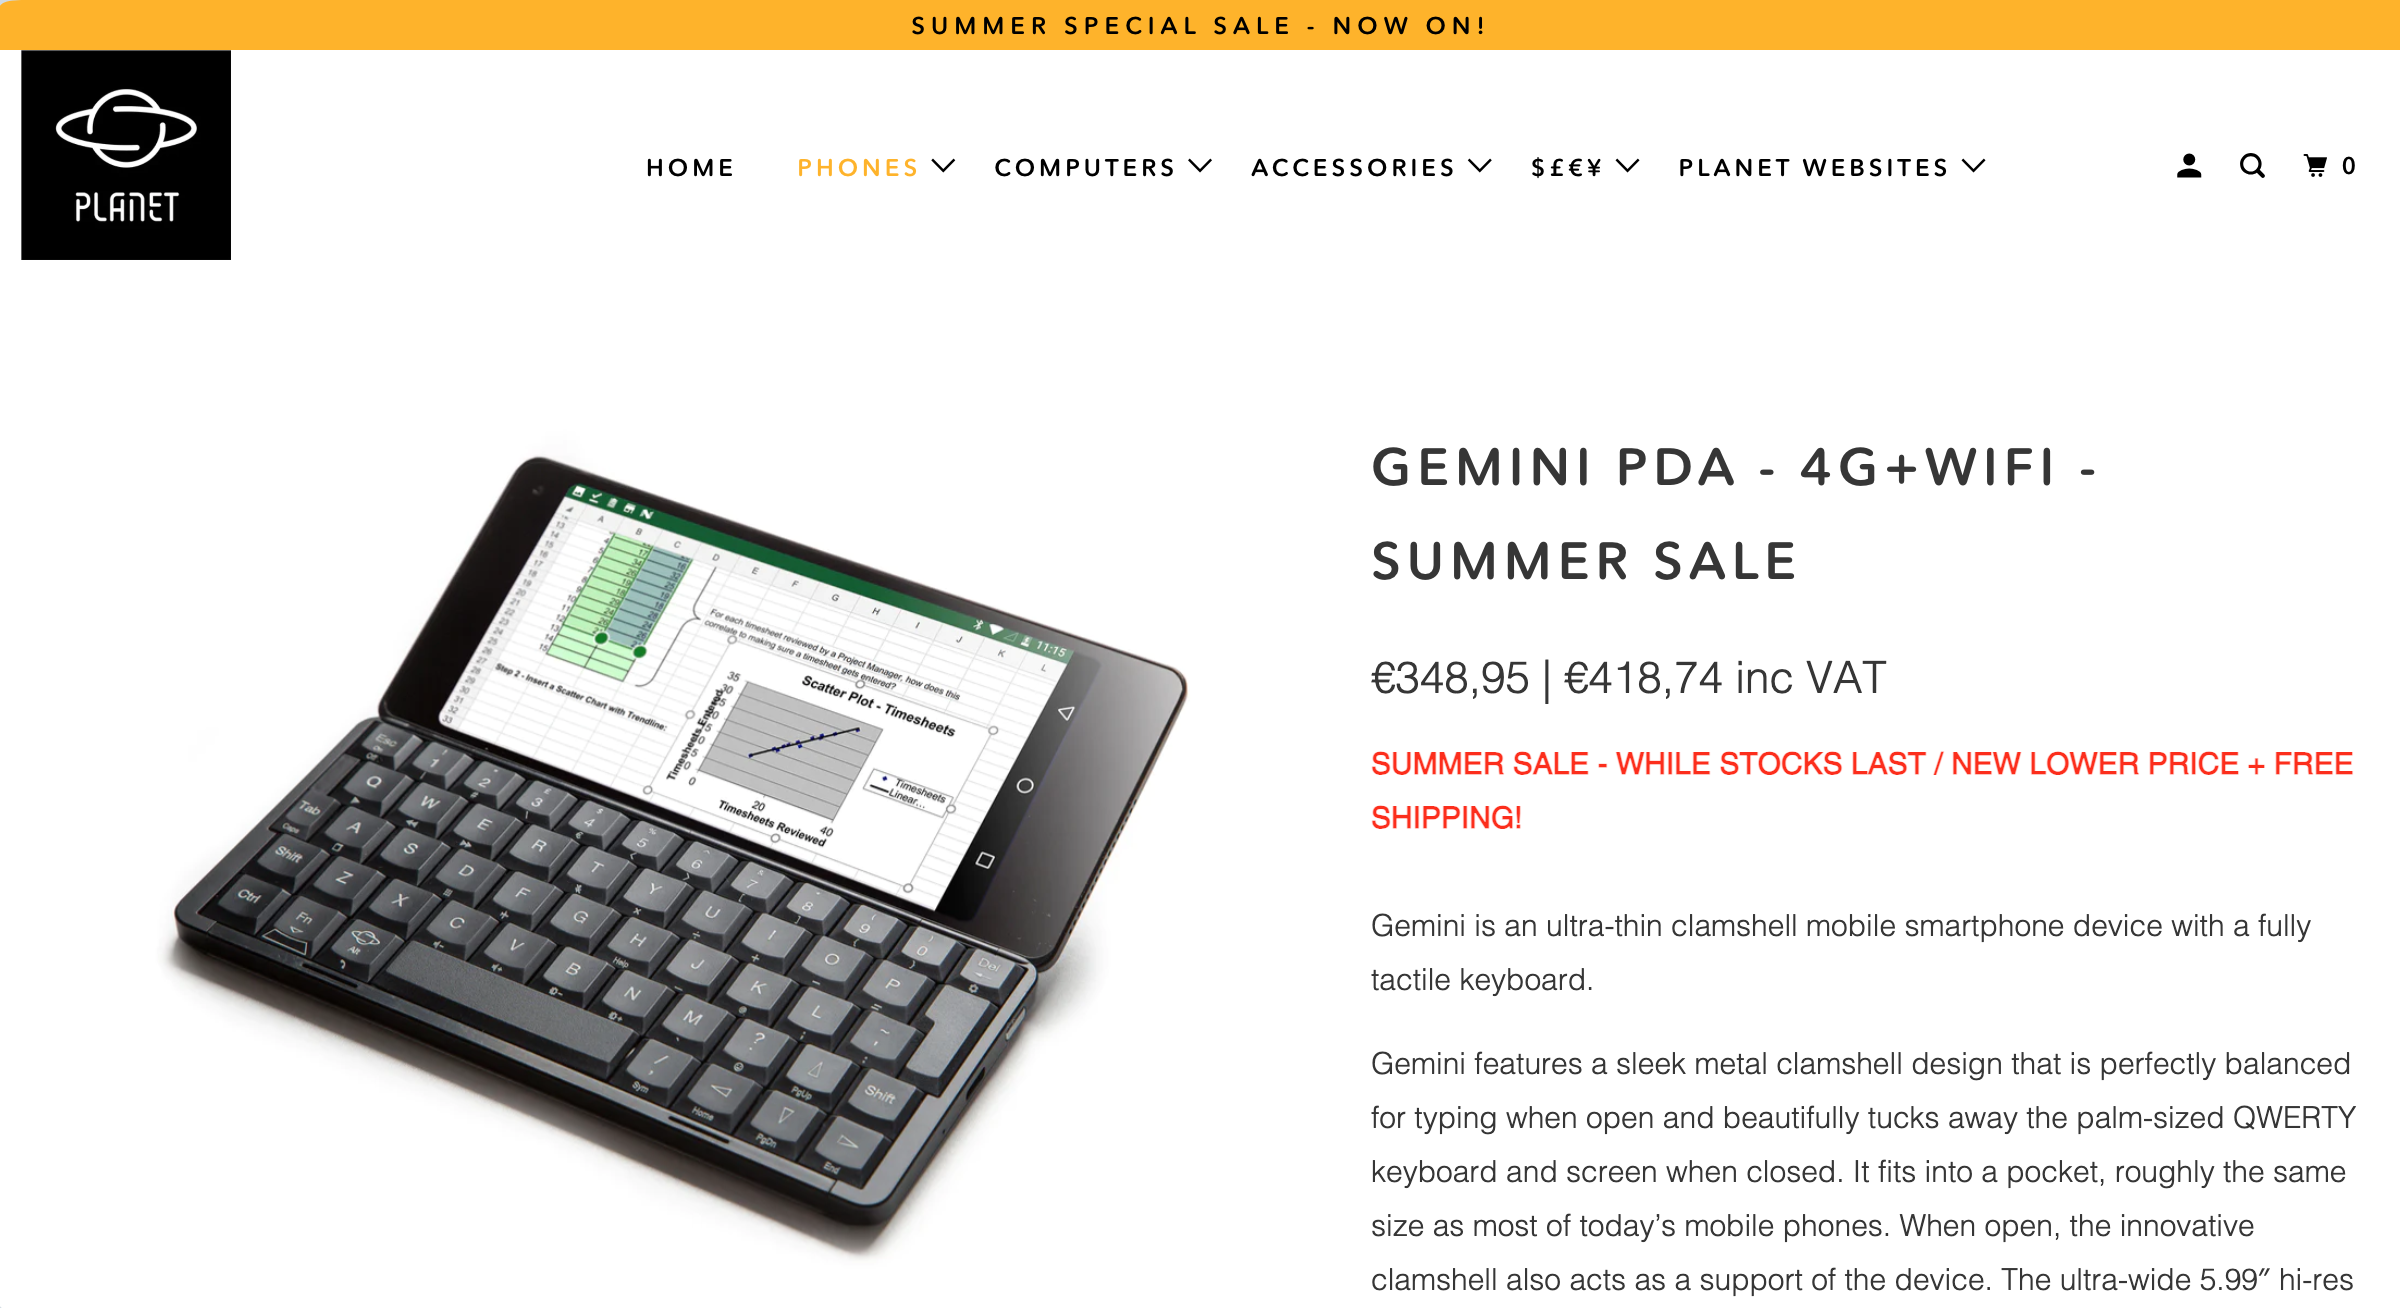 Gemini PDA summer sale